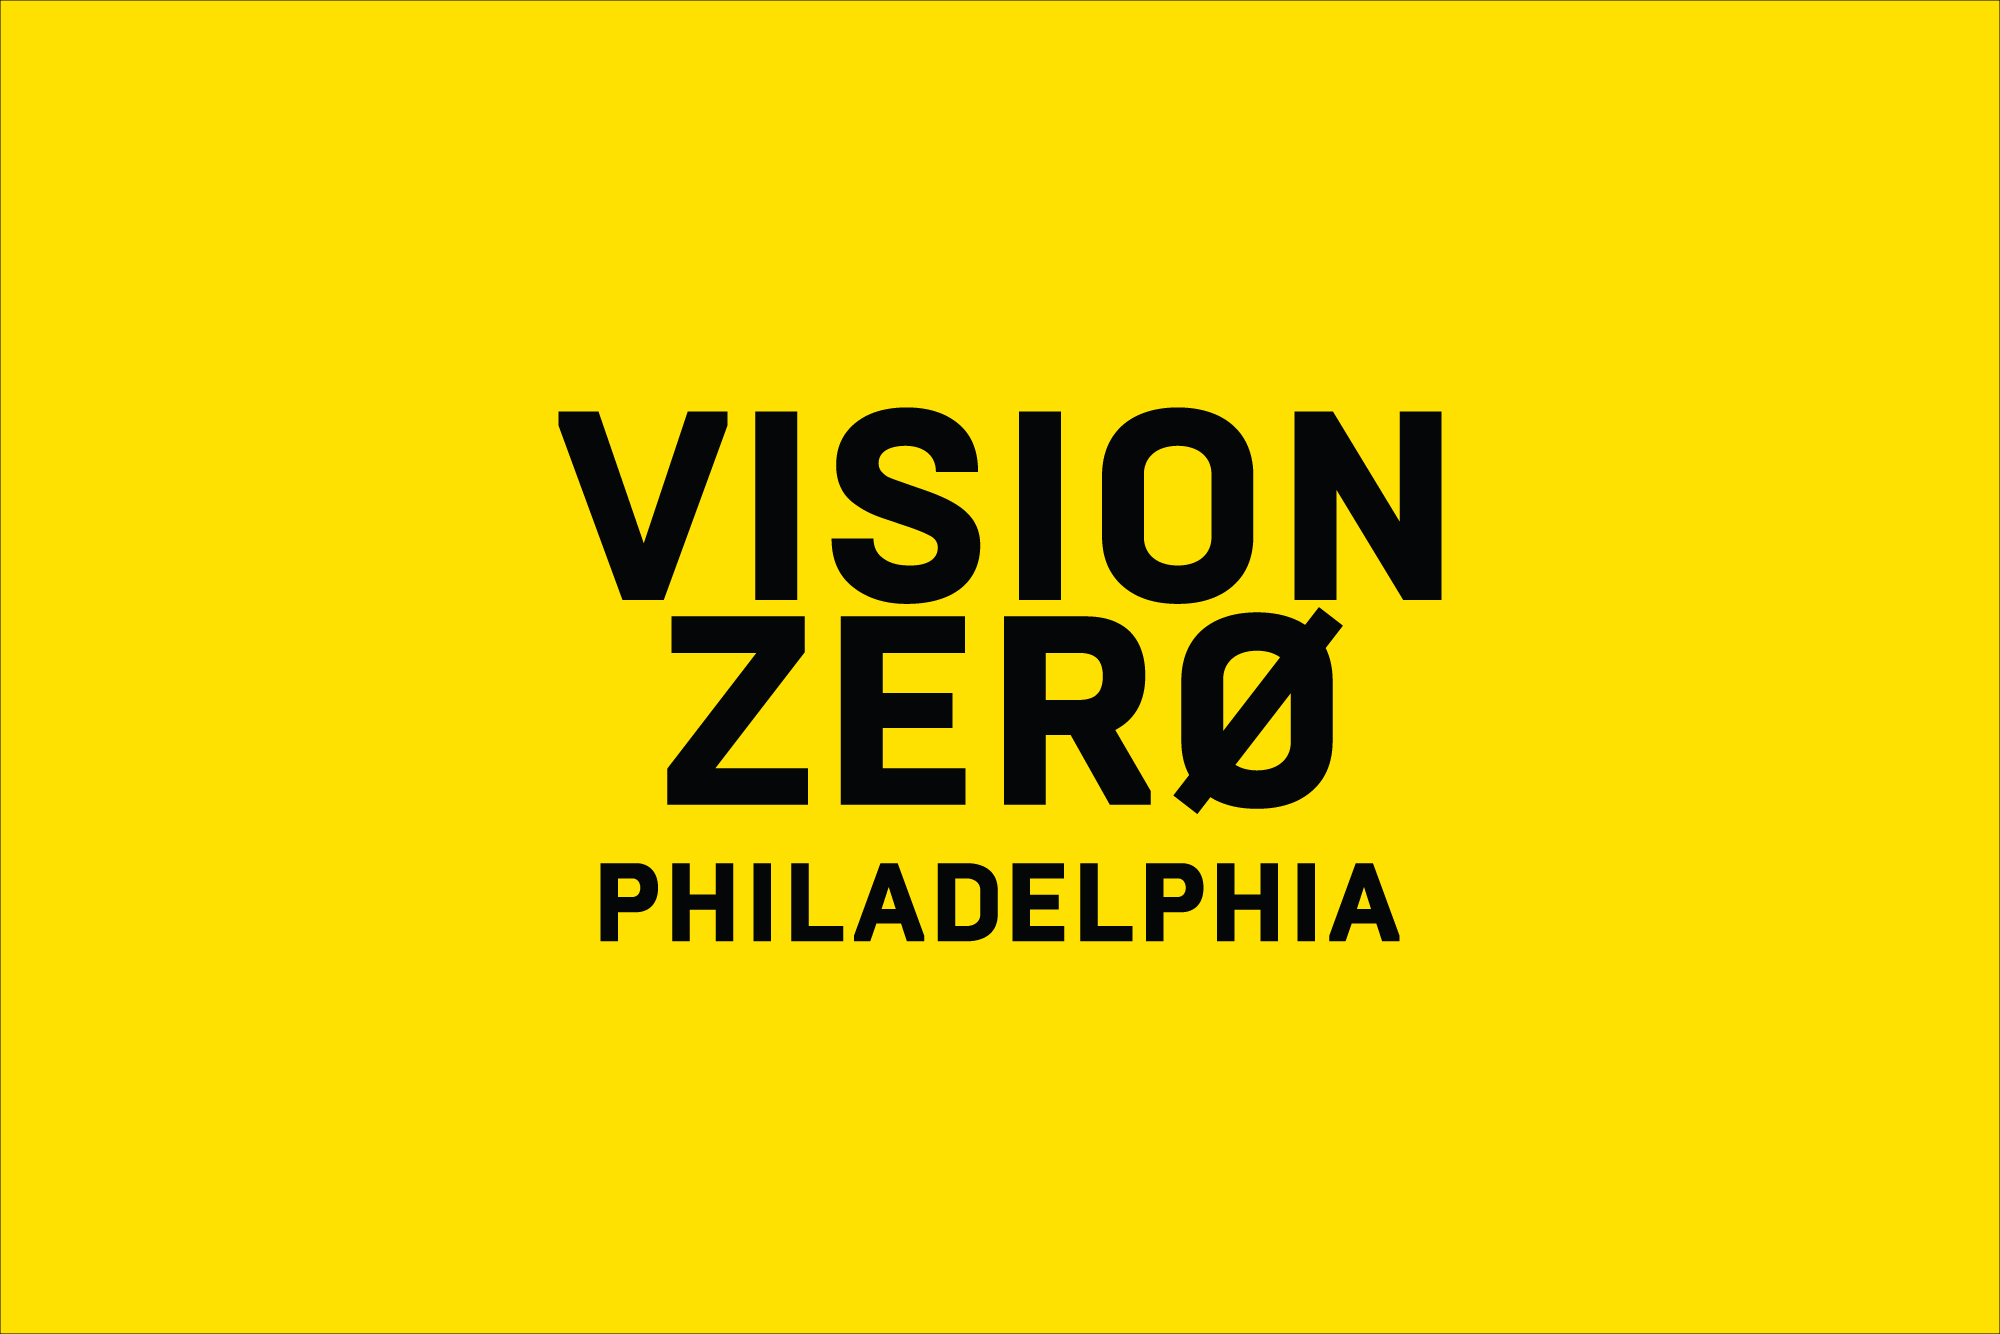 Vision Zero: Cecil B. Moore